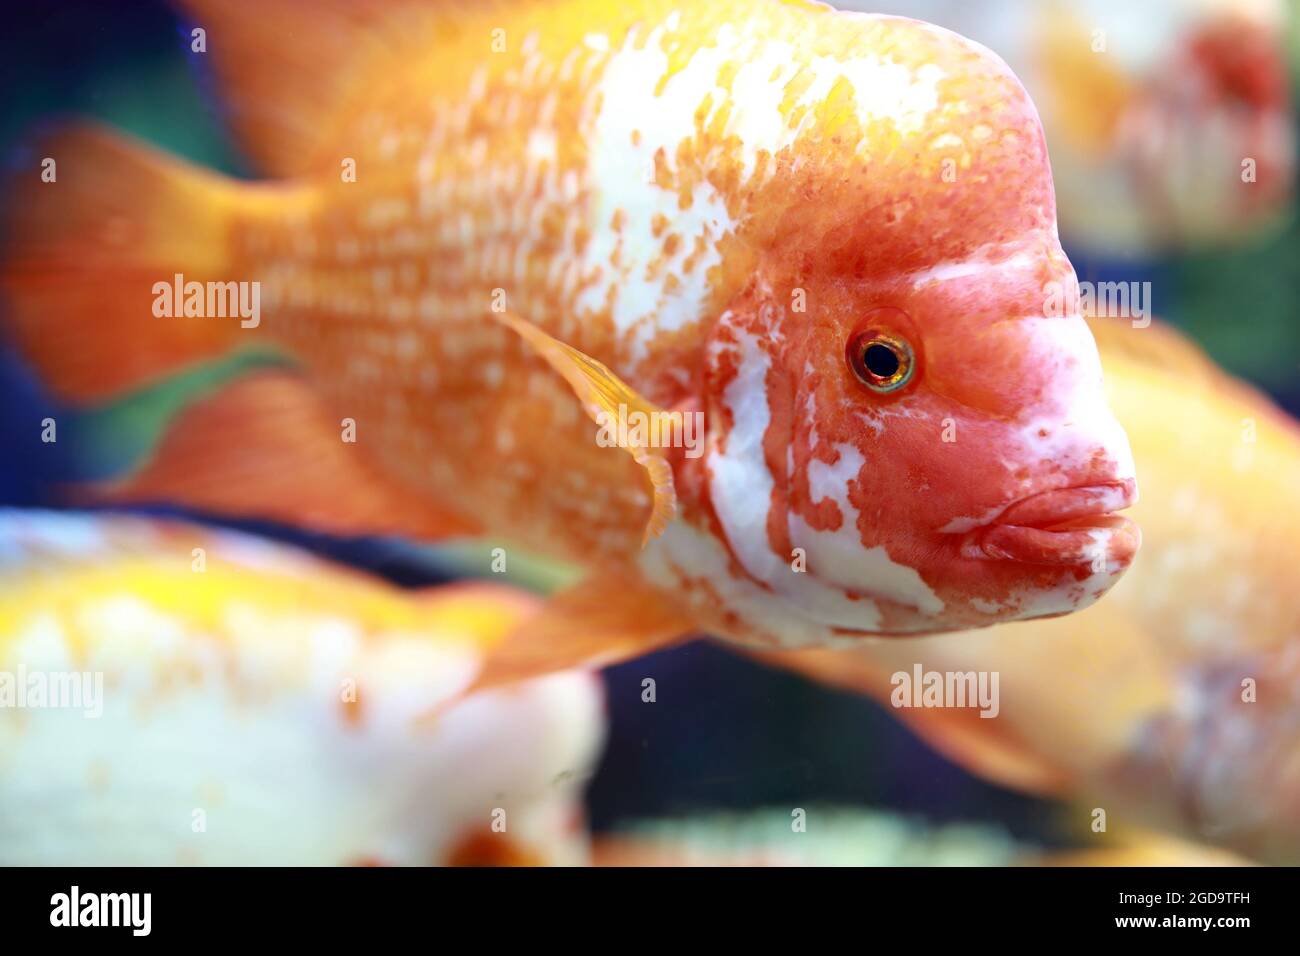 Details of Amphilophus citrinellus fish in aquarium Stock Photo